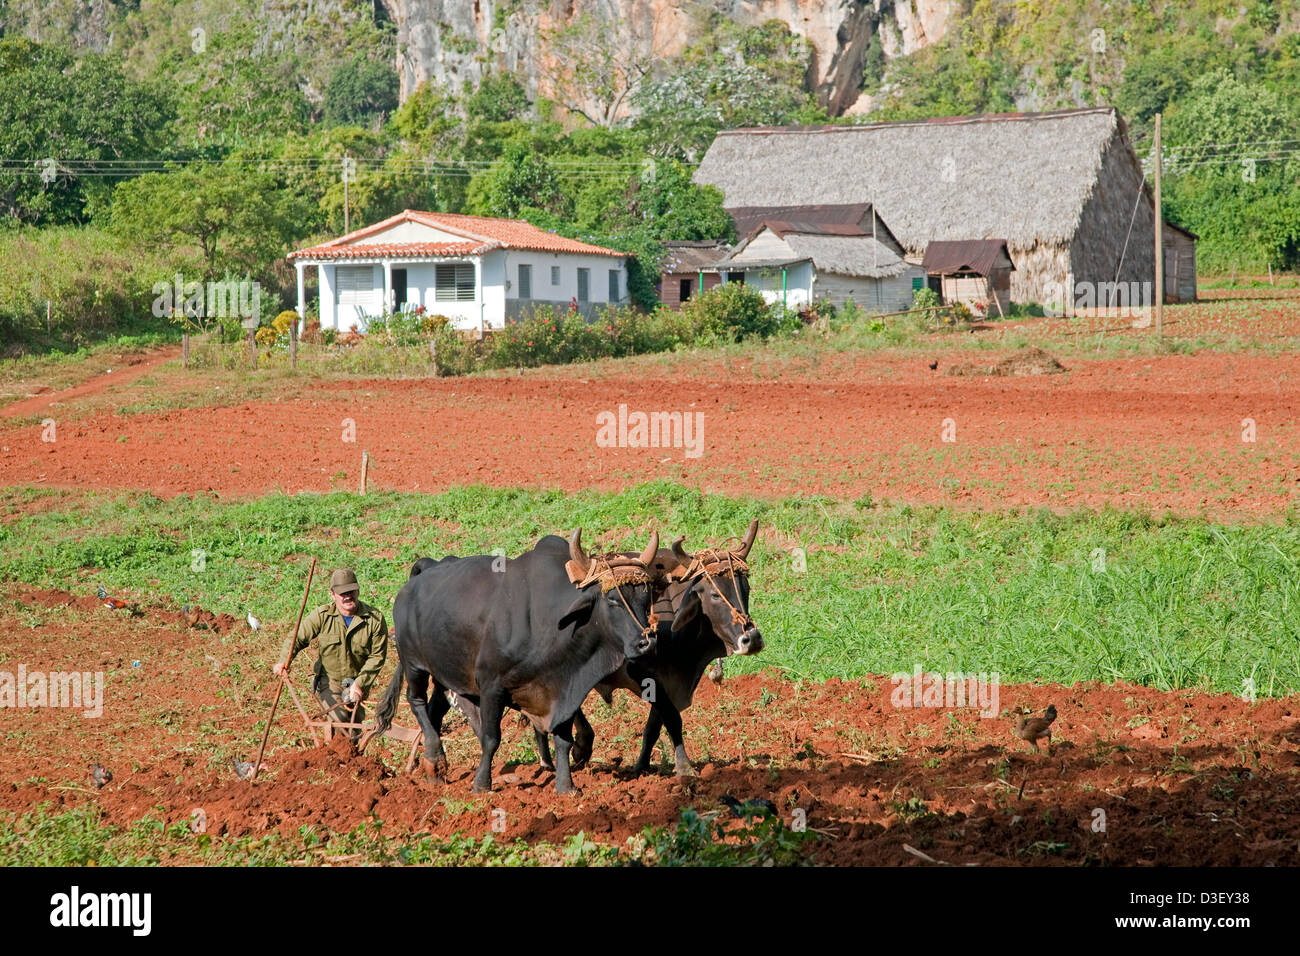 Granjero cubano de arar el campo con arado tirado por bueyes en una plantación de tabaco, Valle de Viñales / Valle de Viñales, Cuba Foto de stock